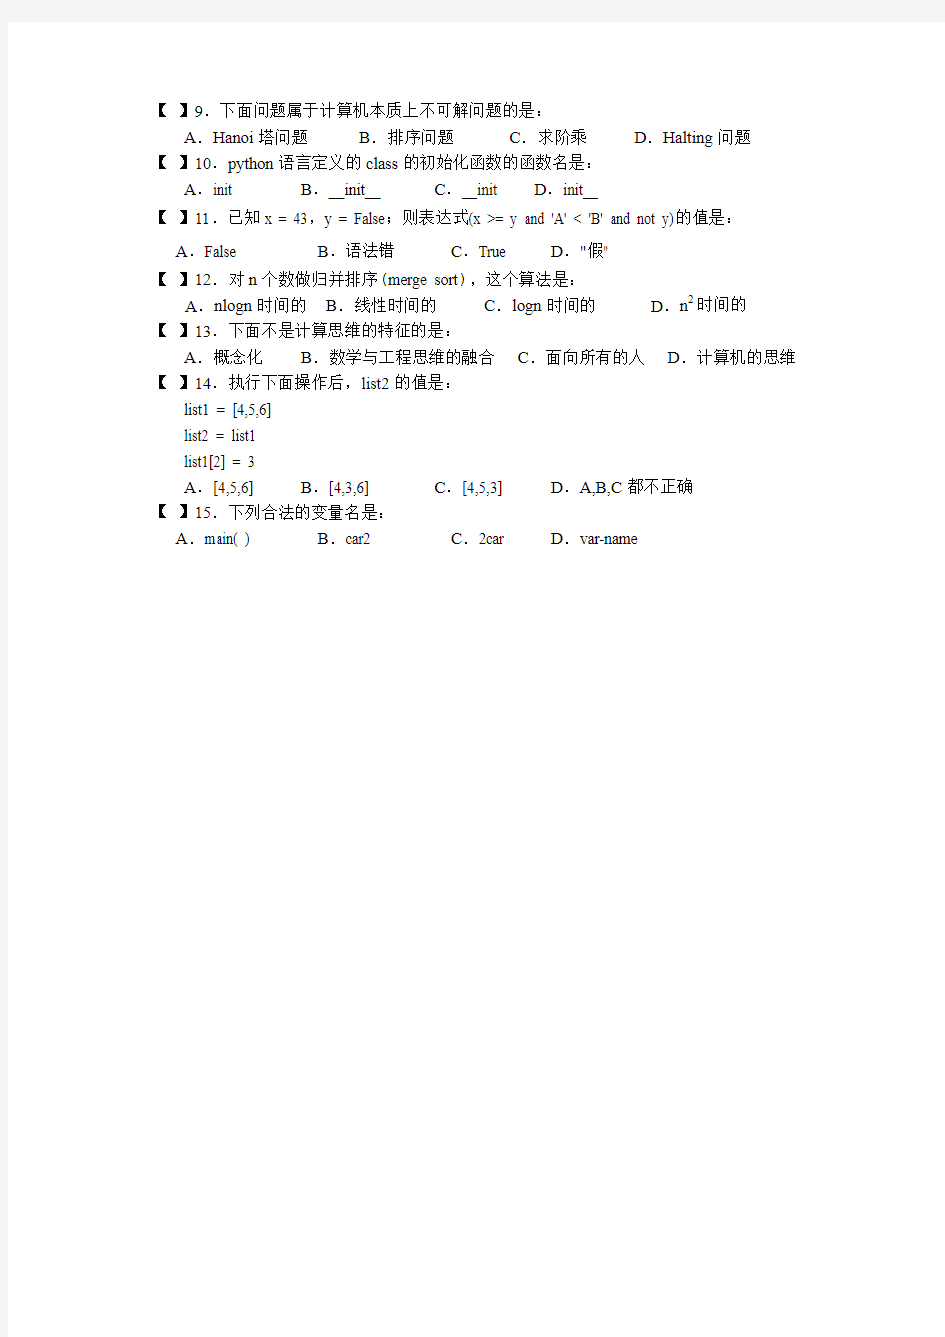 上海交大2011-2012程序设计python期末考试题